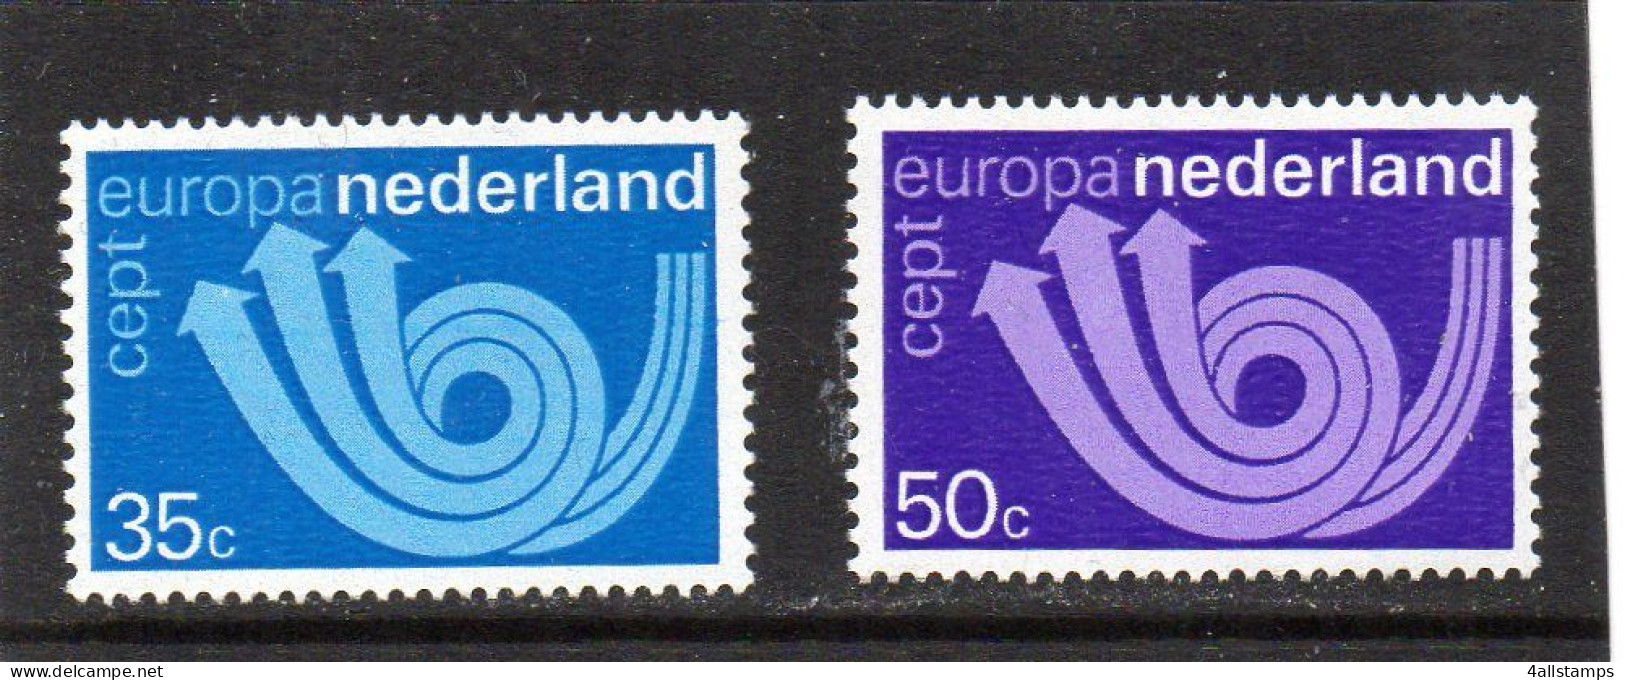 1973 Nederland MI N° 1011/1012 : ** MNH, Postfris, Postfrisch , Neuf Sans Charniere - 1973